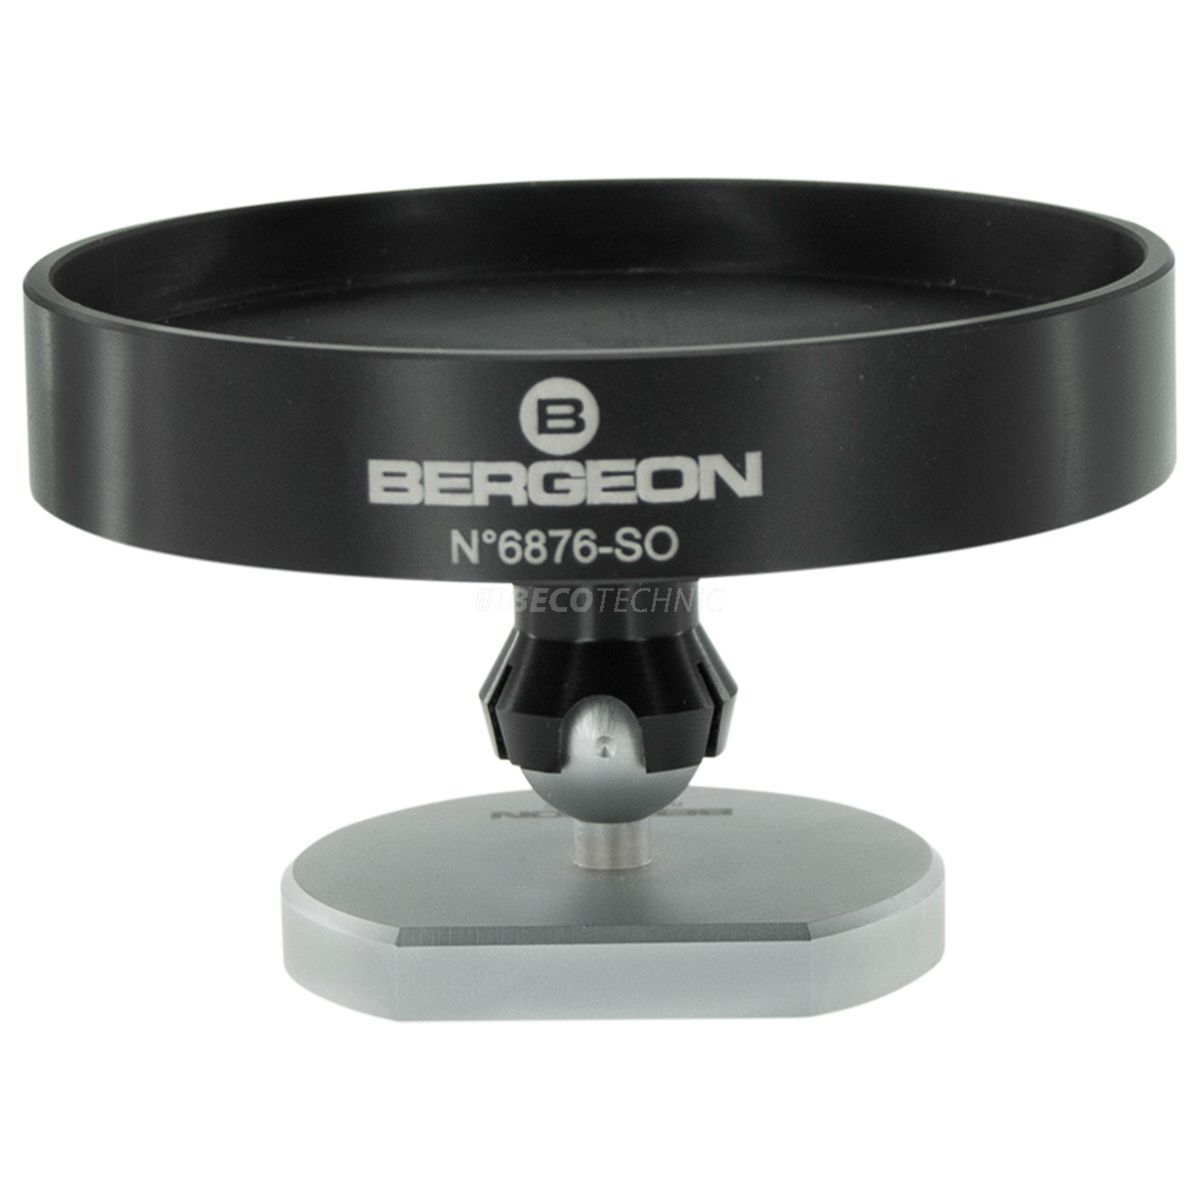 Bergeon 6876-SO support orientable sur rotule pour coussin d’emboîtage Ø 80 mm
